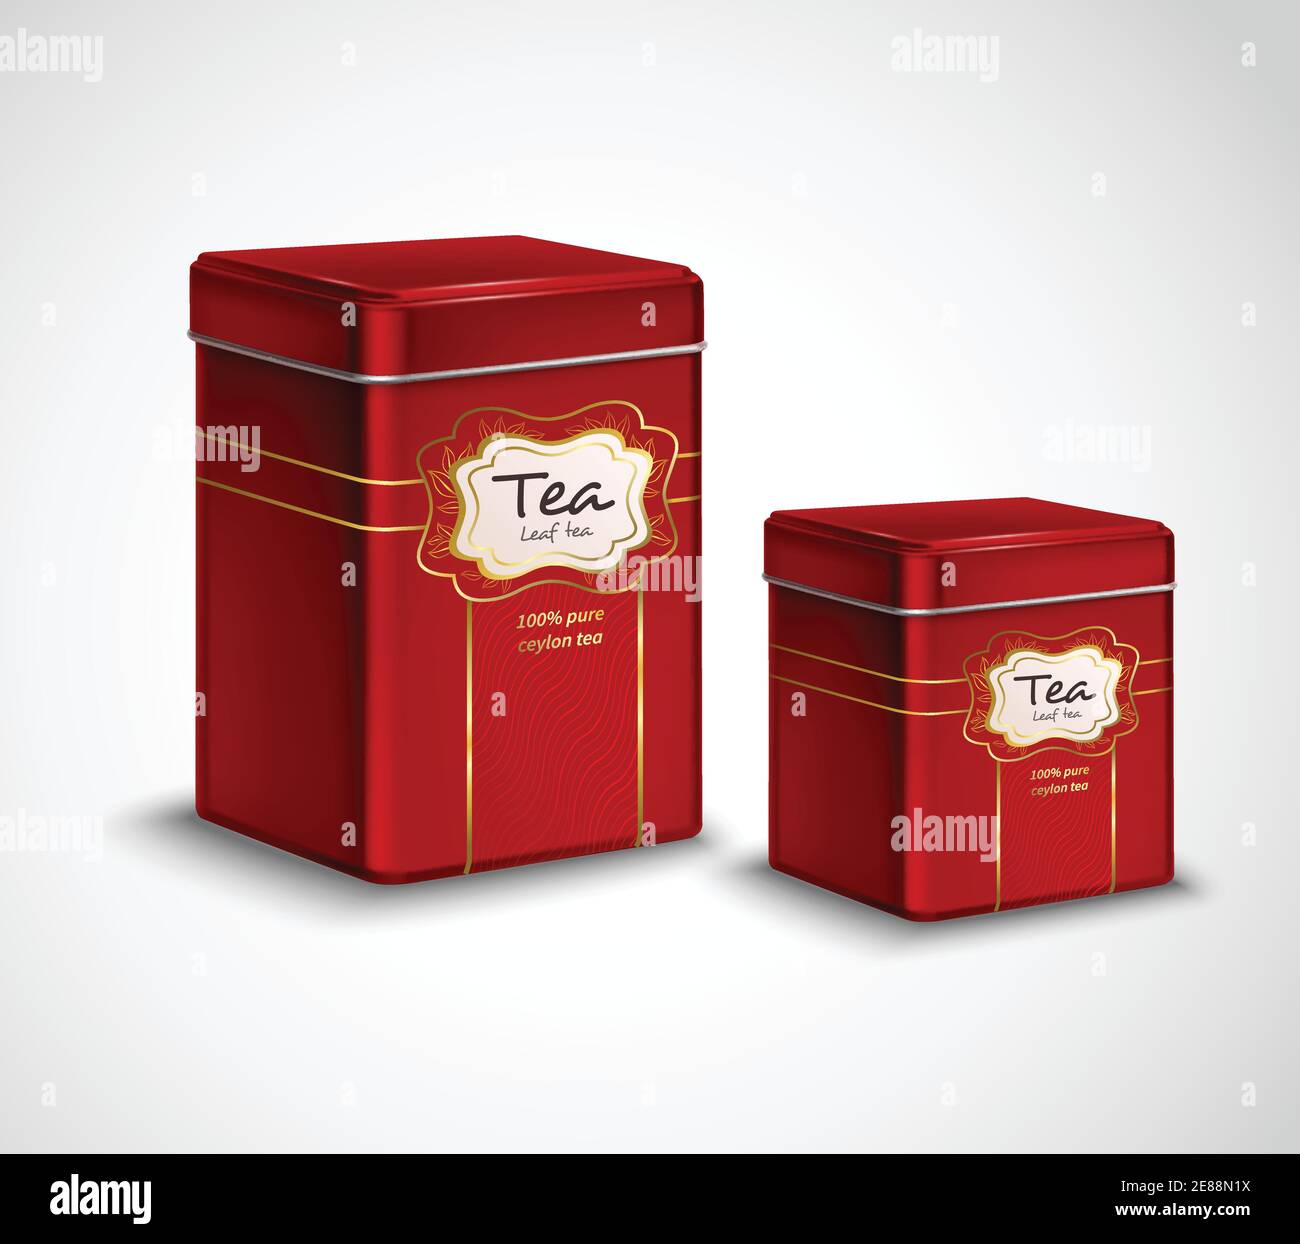 Confezione in metallo per tè di alta qualità e contenitori di stoccaggio pubblicità realistica poster con 2 tini rossi, illustrazione vettoriale Illustrazione Vettoriale